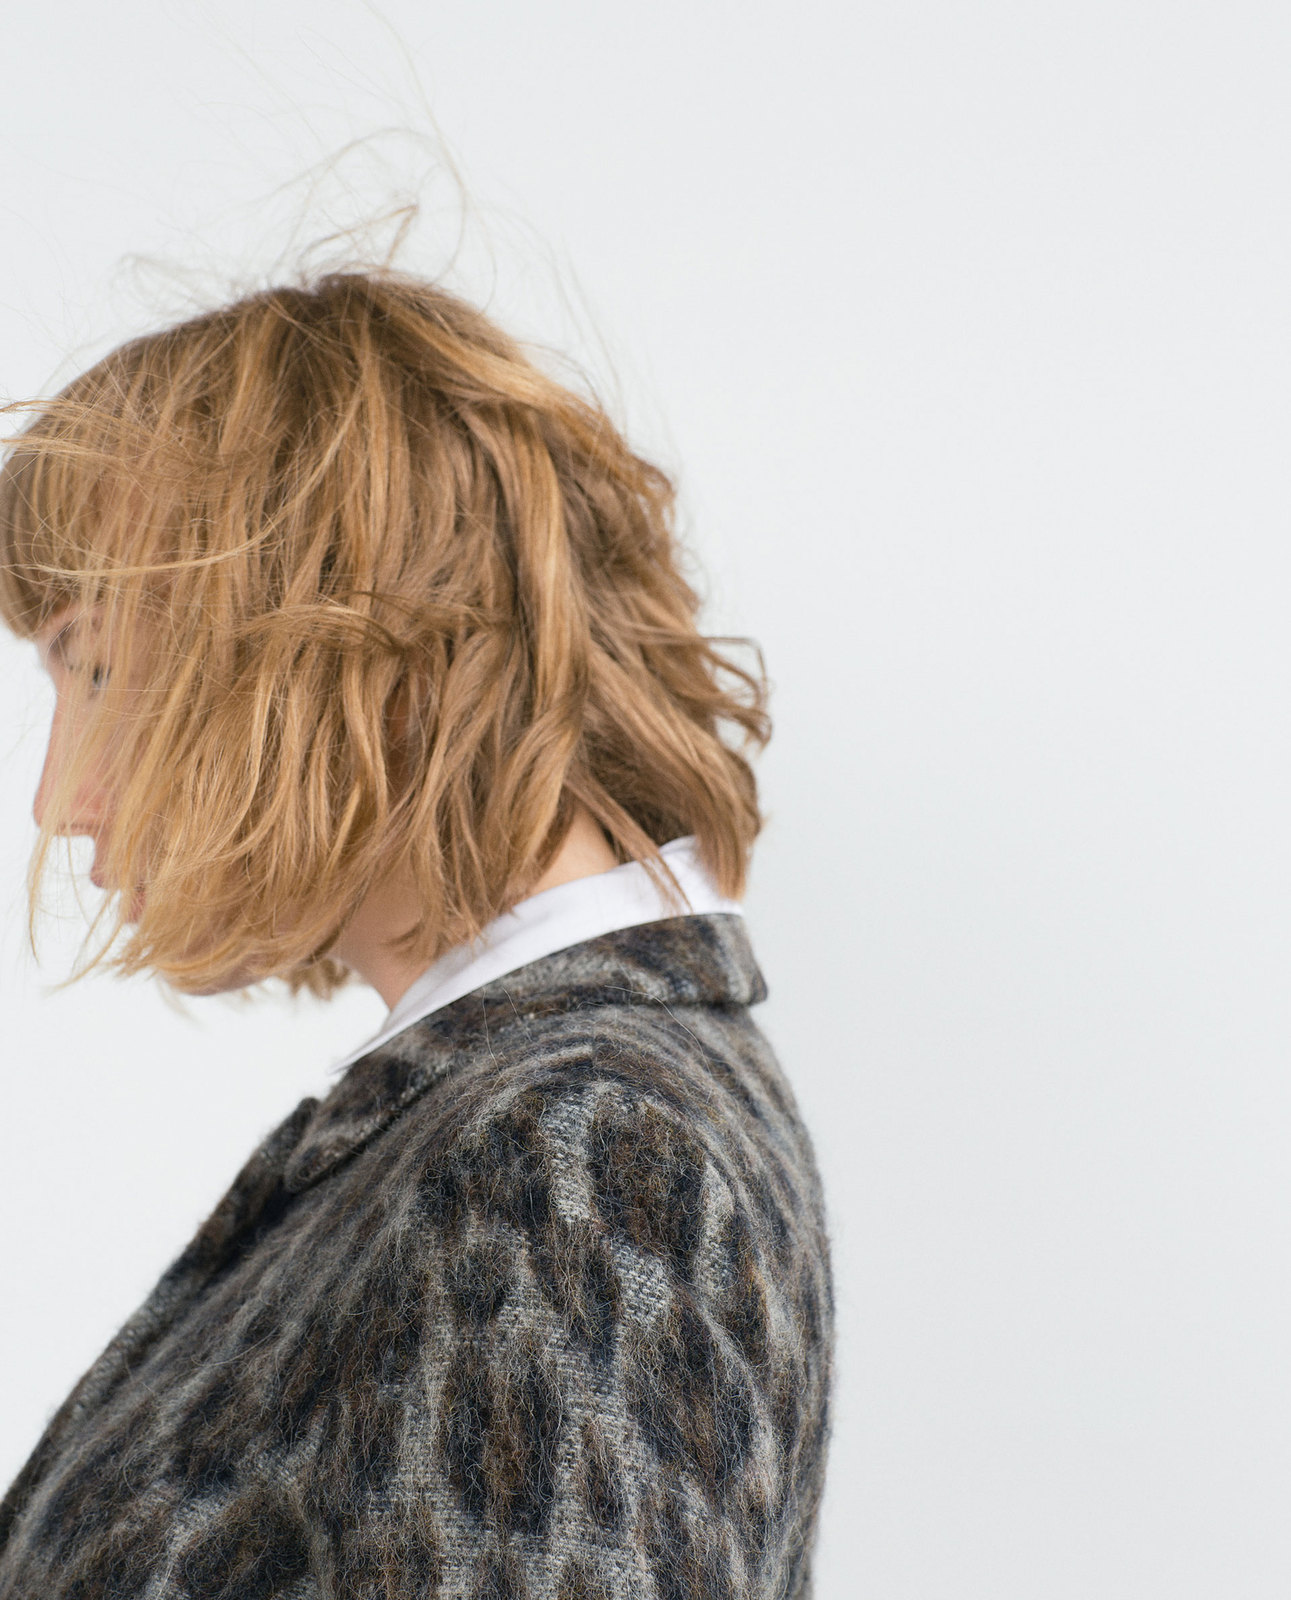 Zara mintás alpaka női kabát 2015.10.15 fotója